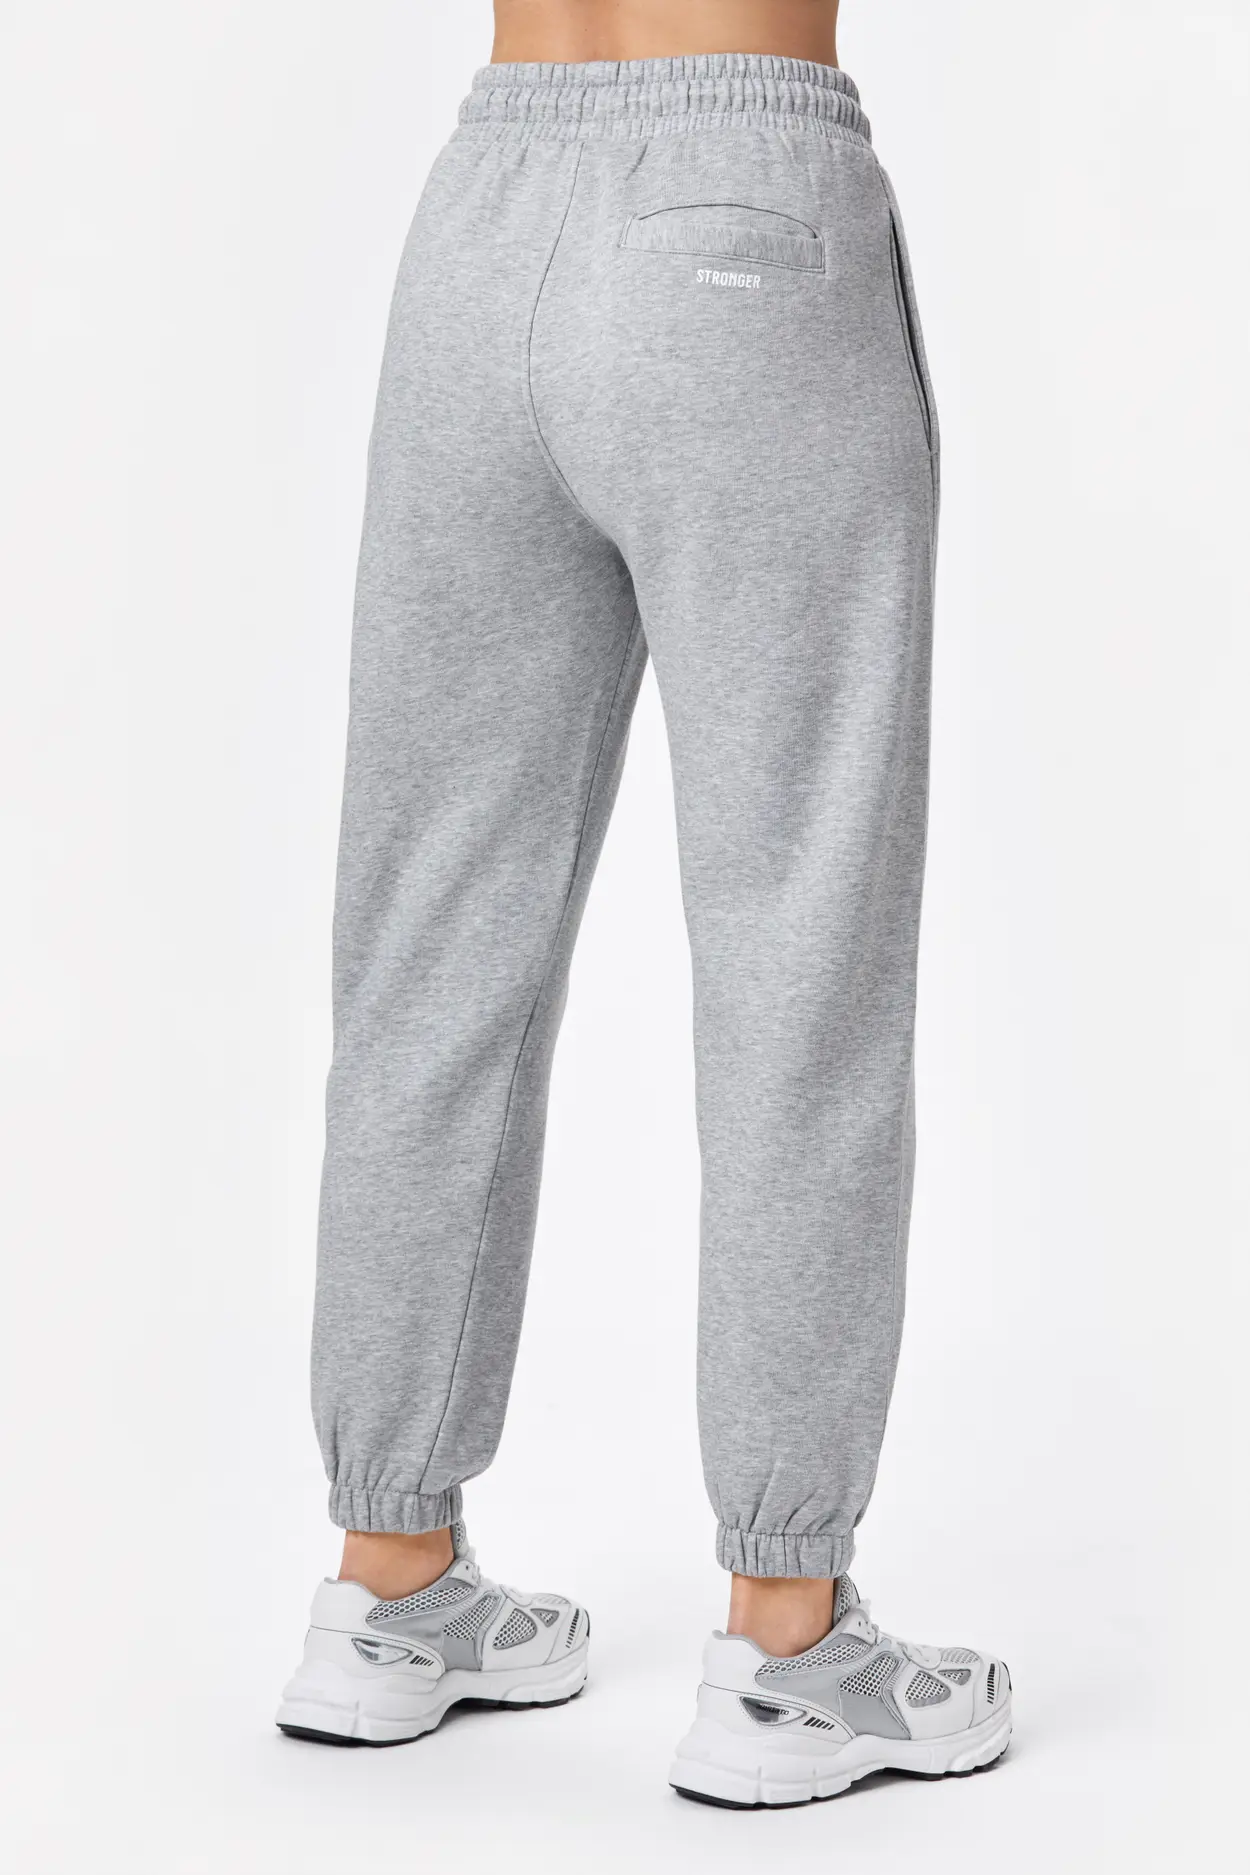 Cotton-blend Sweatpants - Gray melange - Ladies